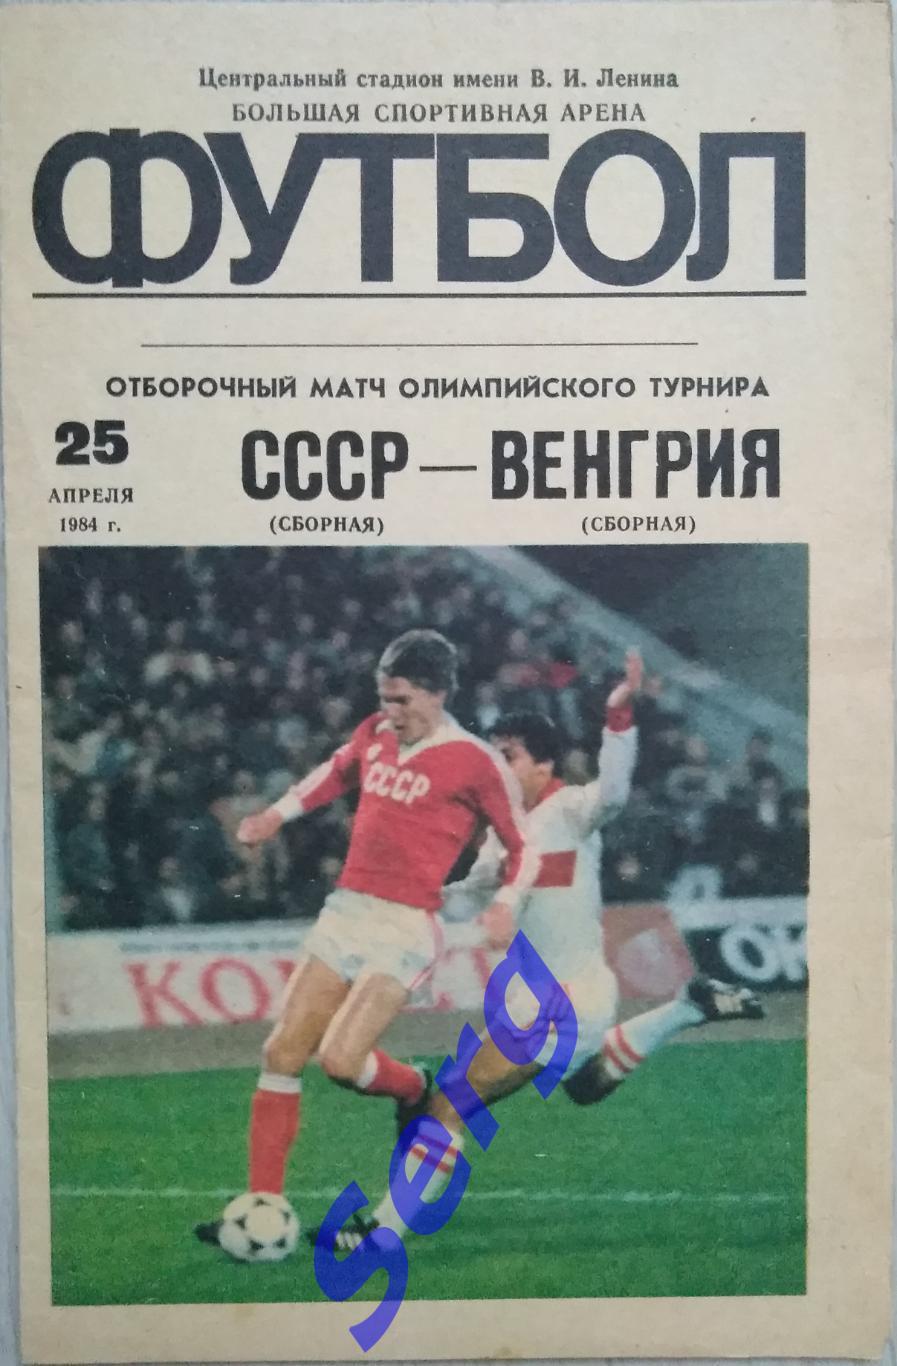 СССР (олимпийская) - Венгрия (олимпийская) - 25 апреля 1984 год